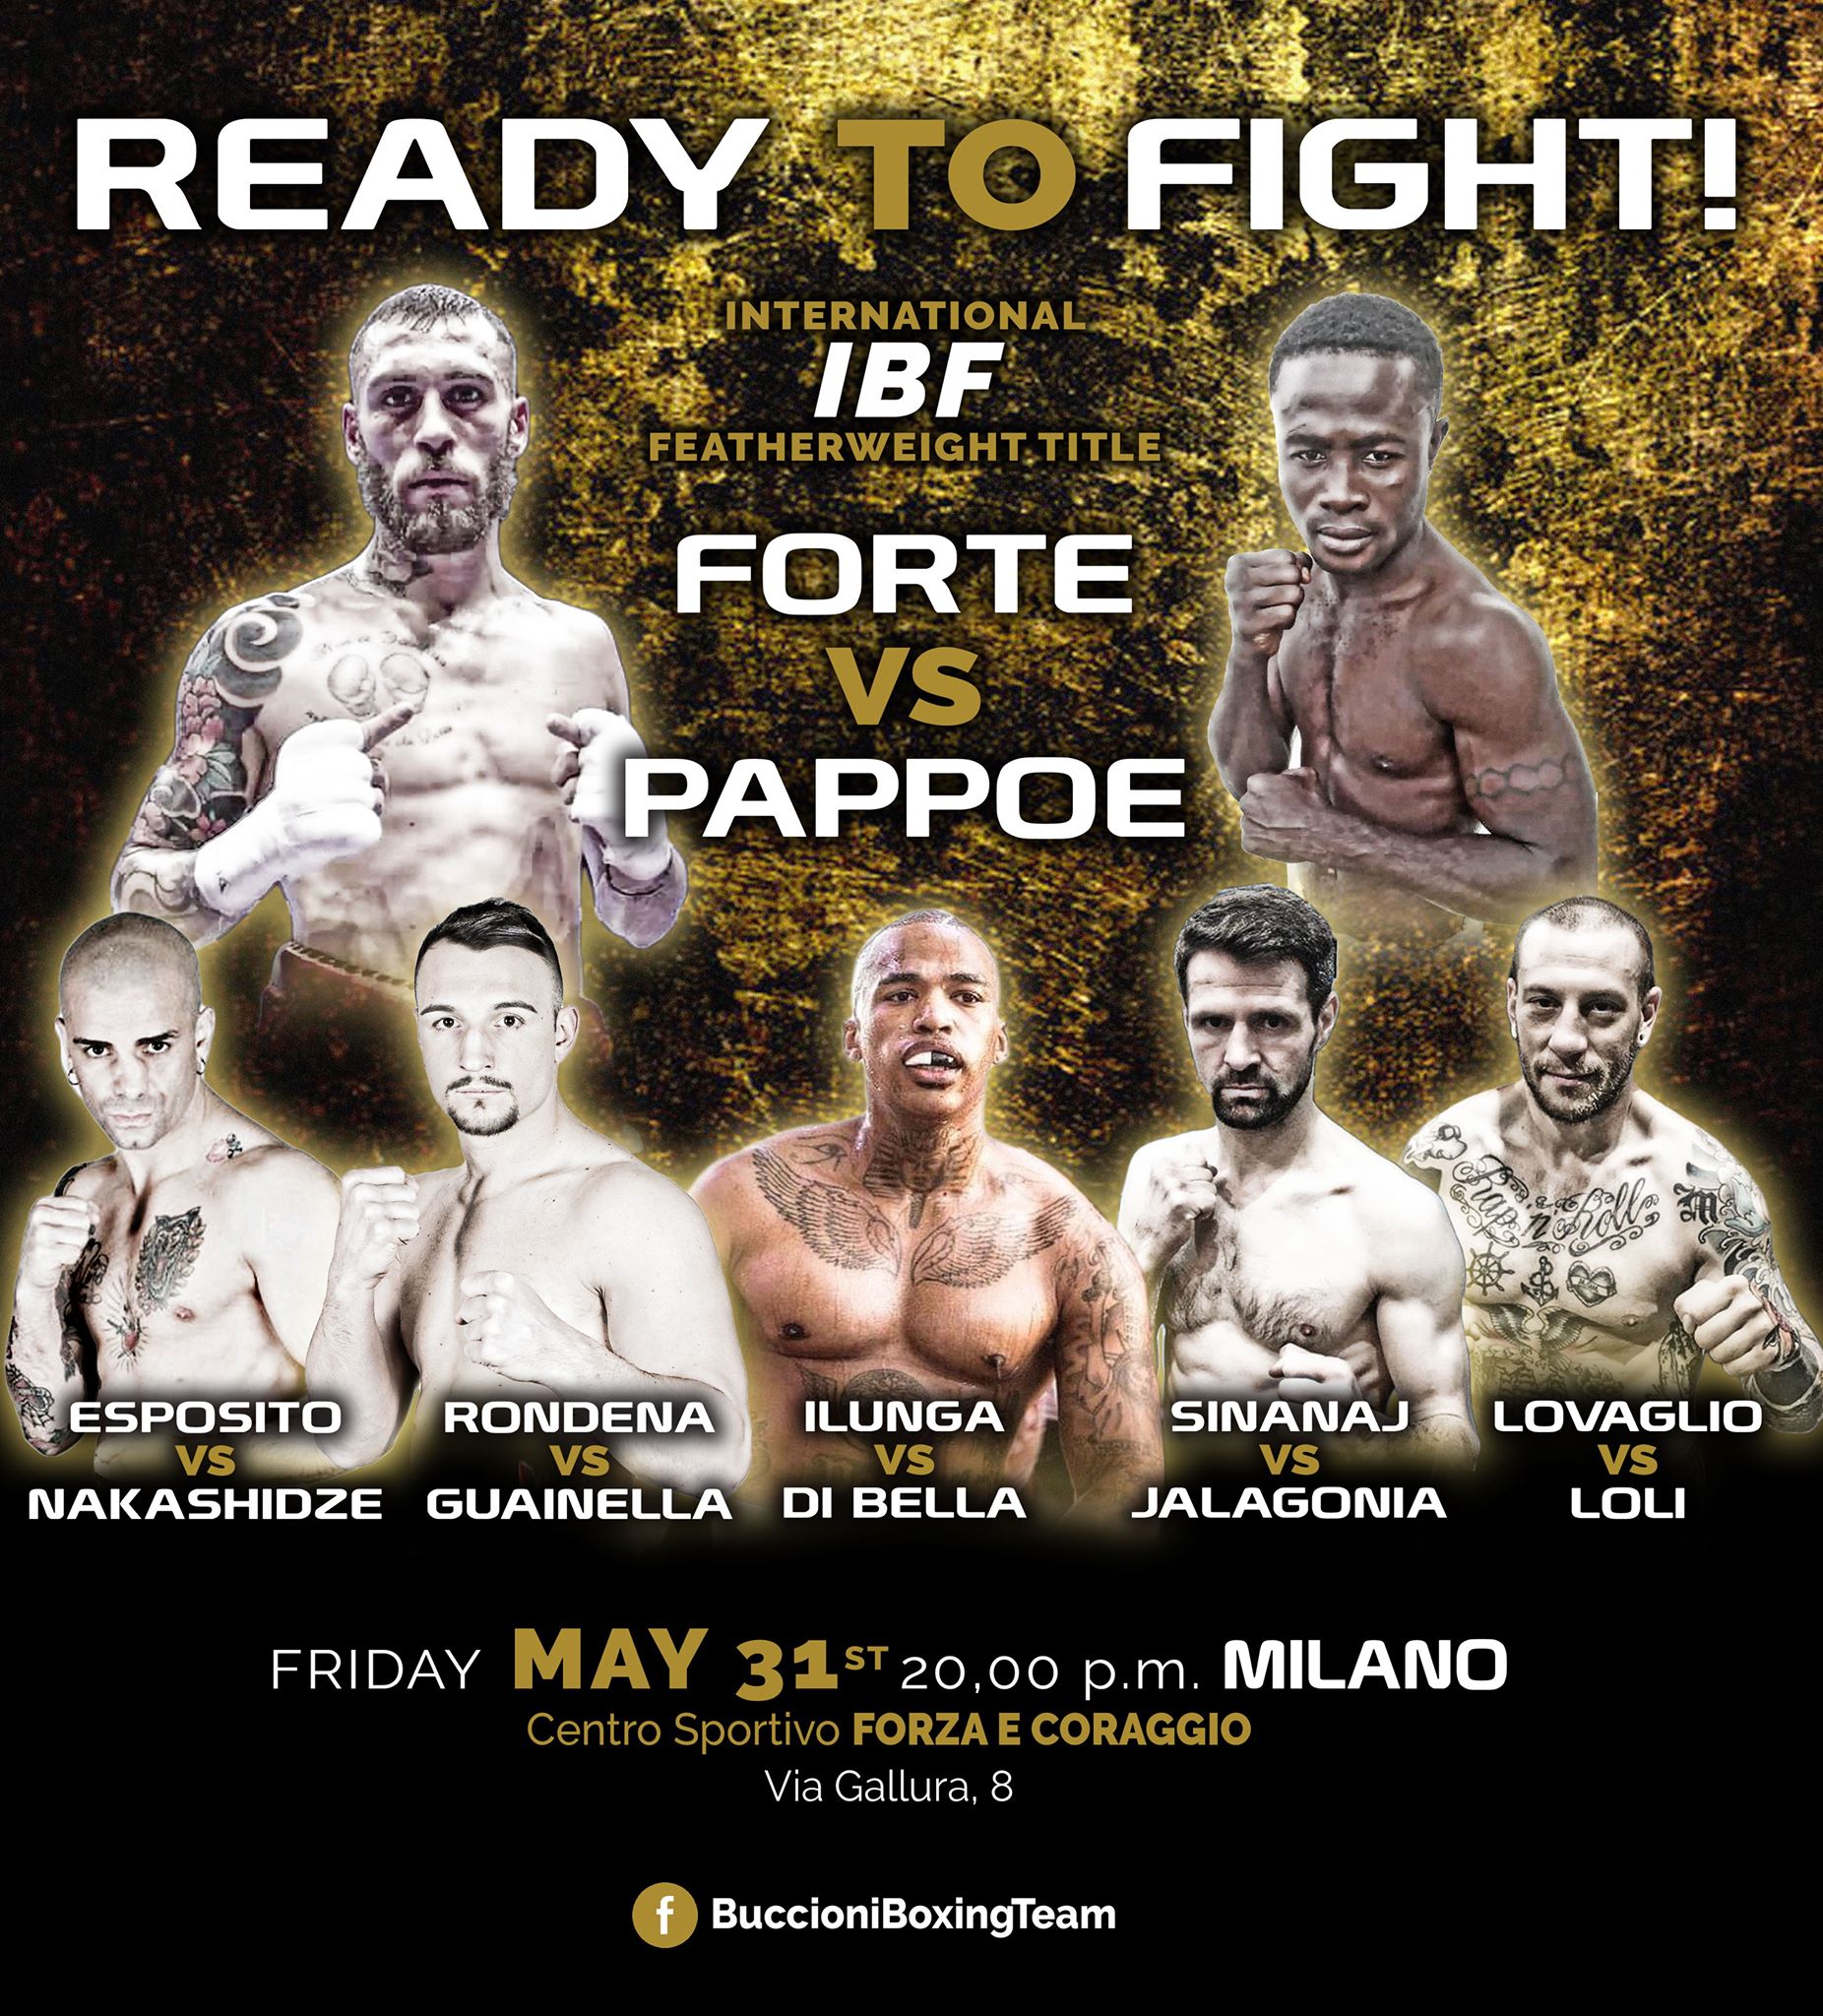 31 maggio Milano - Ready to fight! Main Event: Forte vs Pappoe Int. IBF Piuma 